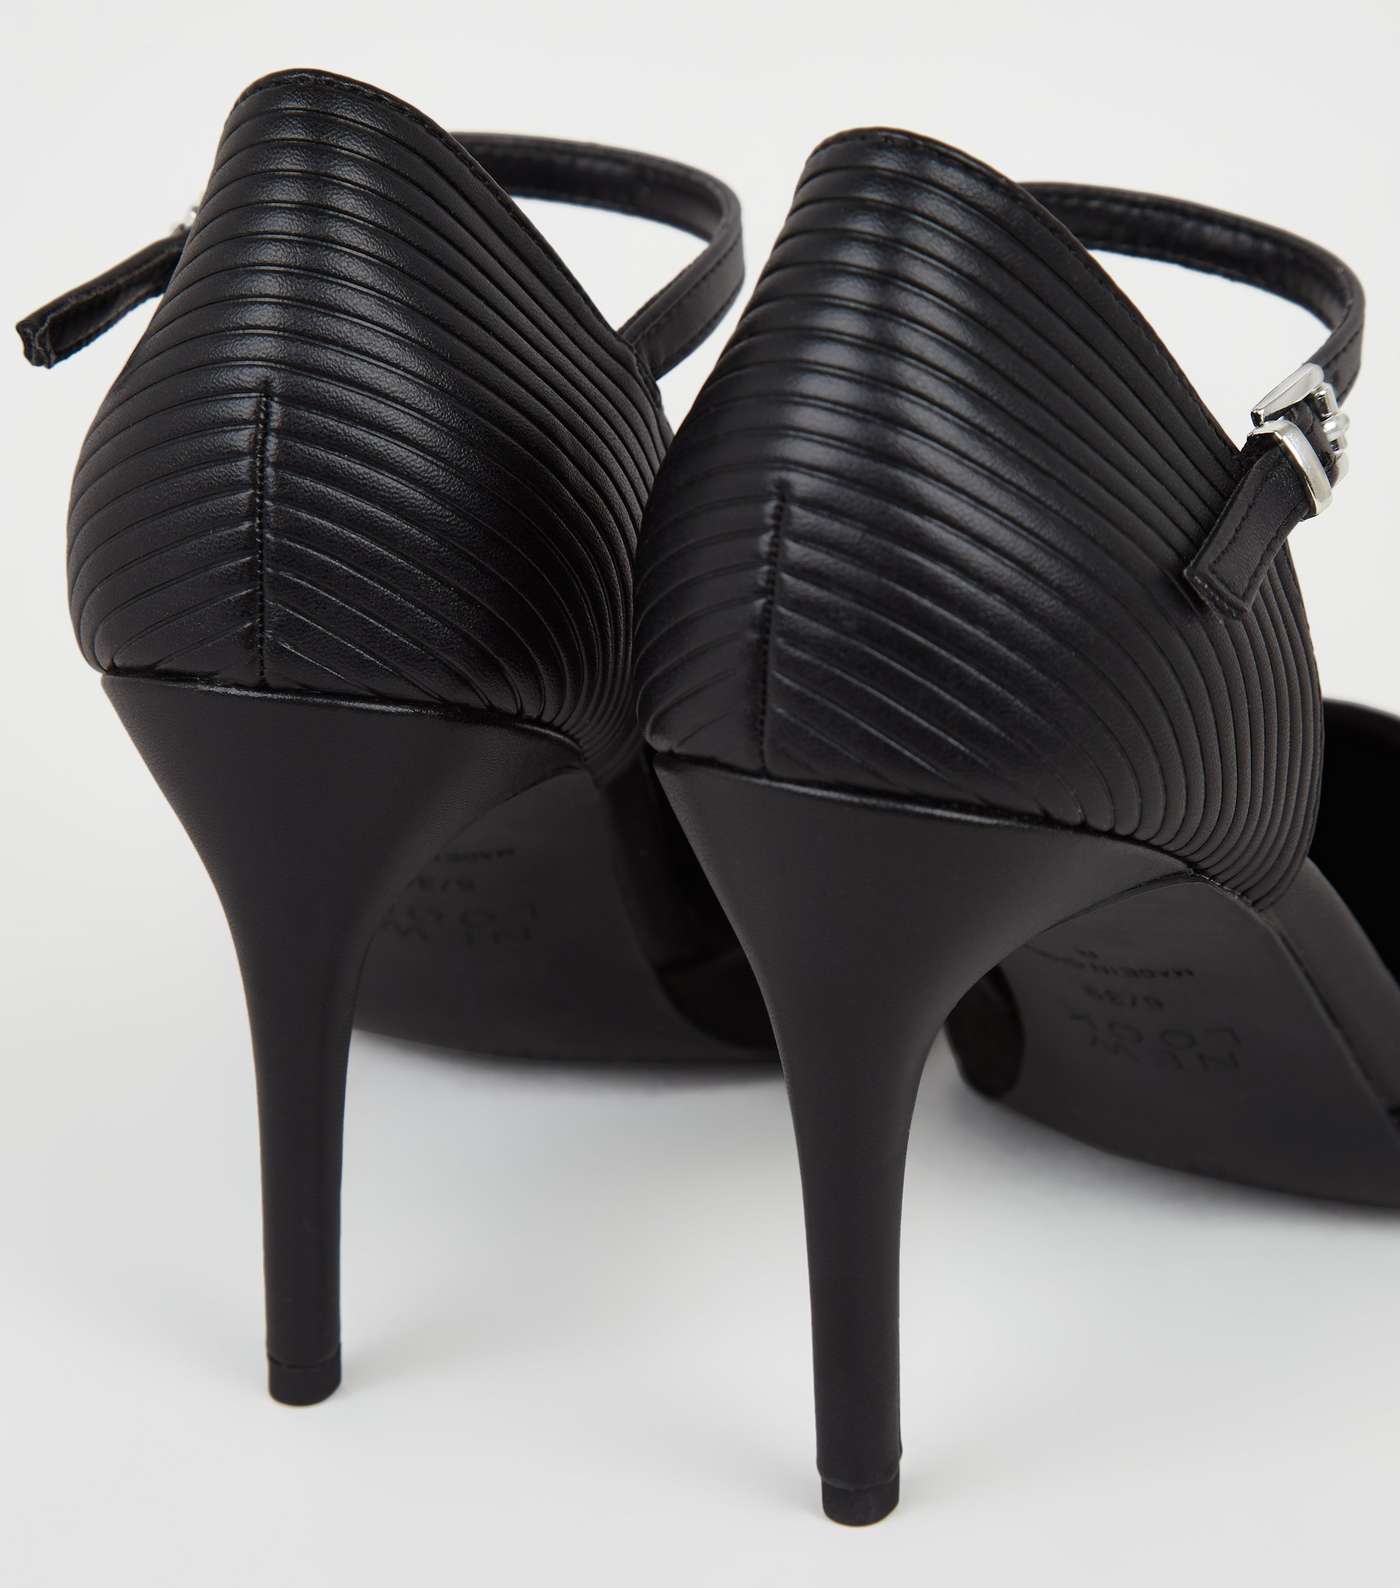 Black Suedette 2 Part Stiletto Court Shoes Image 4